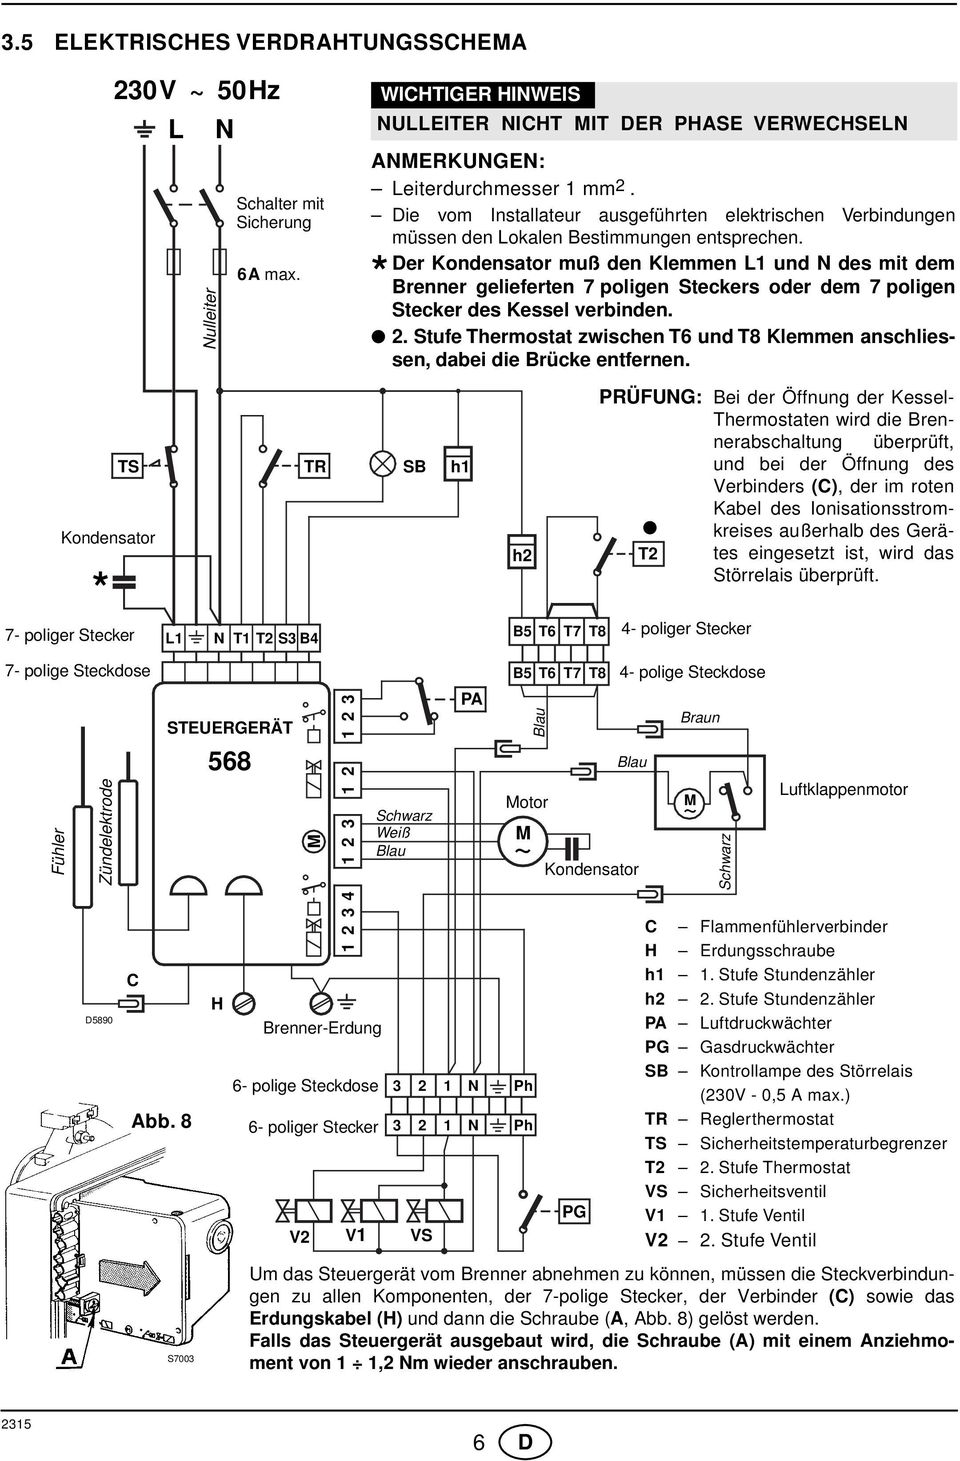 Der Kondensator muß den Klemmen L1 und N des mit dem * Brenner gelieferten 7 poligen Steckers oder dem 7 poligen Stecker des Kessel verbinden. 2.